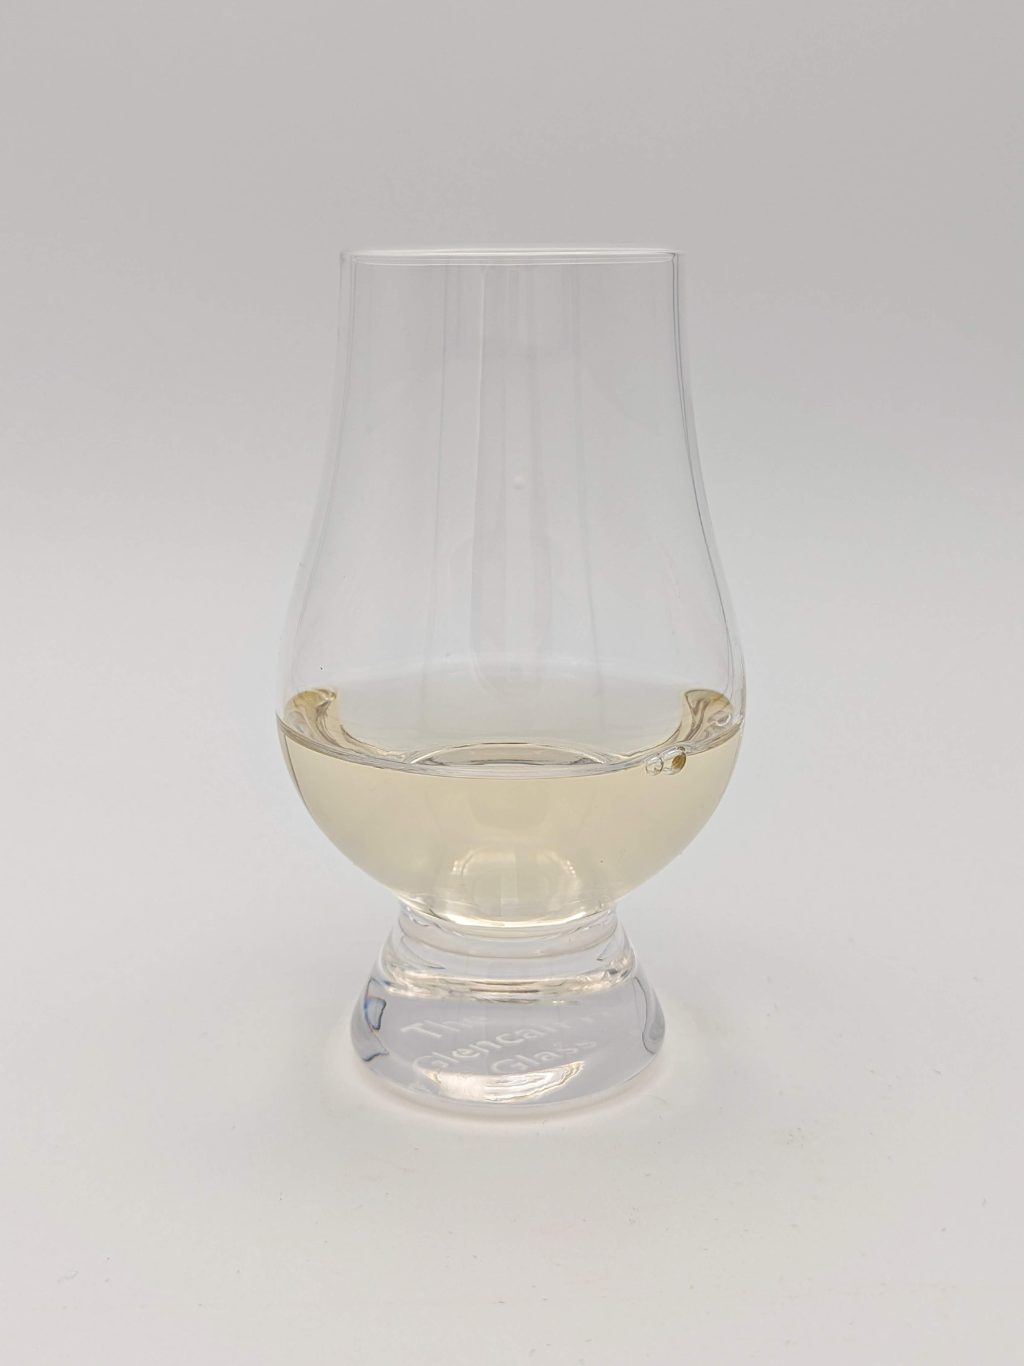 slightly gold liquid in a glencairn glass